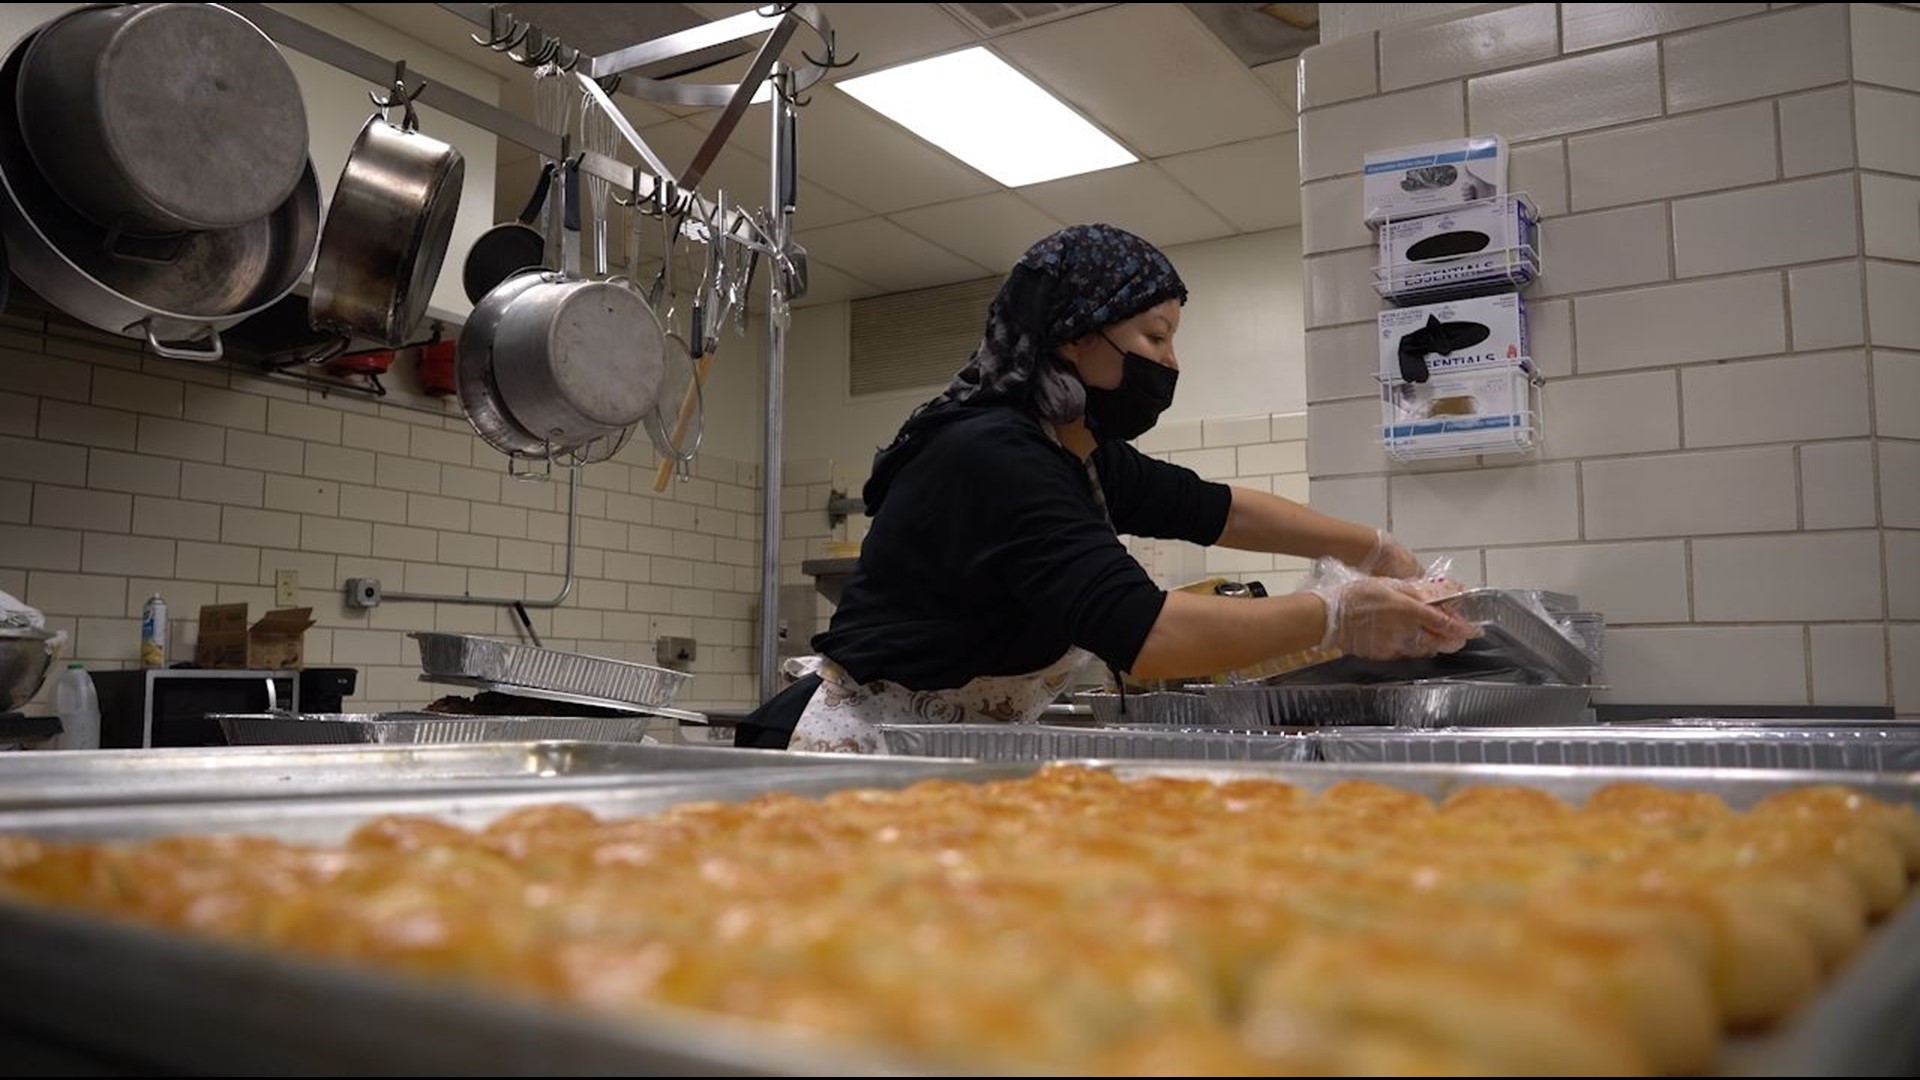 Break Bread, Break Borders is a culinary workforce training program in Dallas for refugee women from war-torn countries.